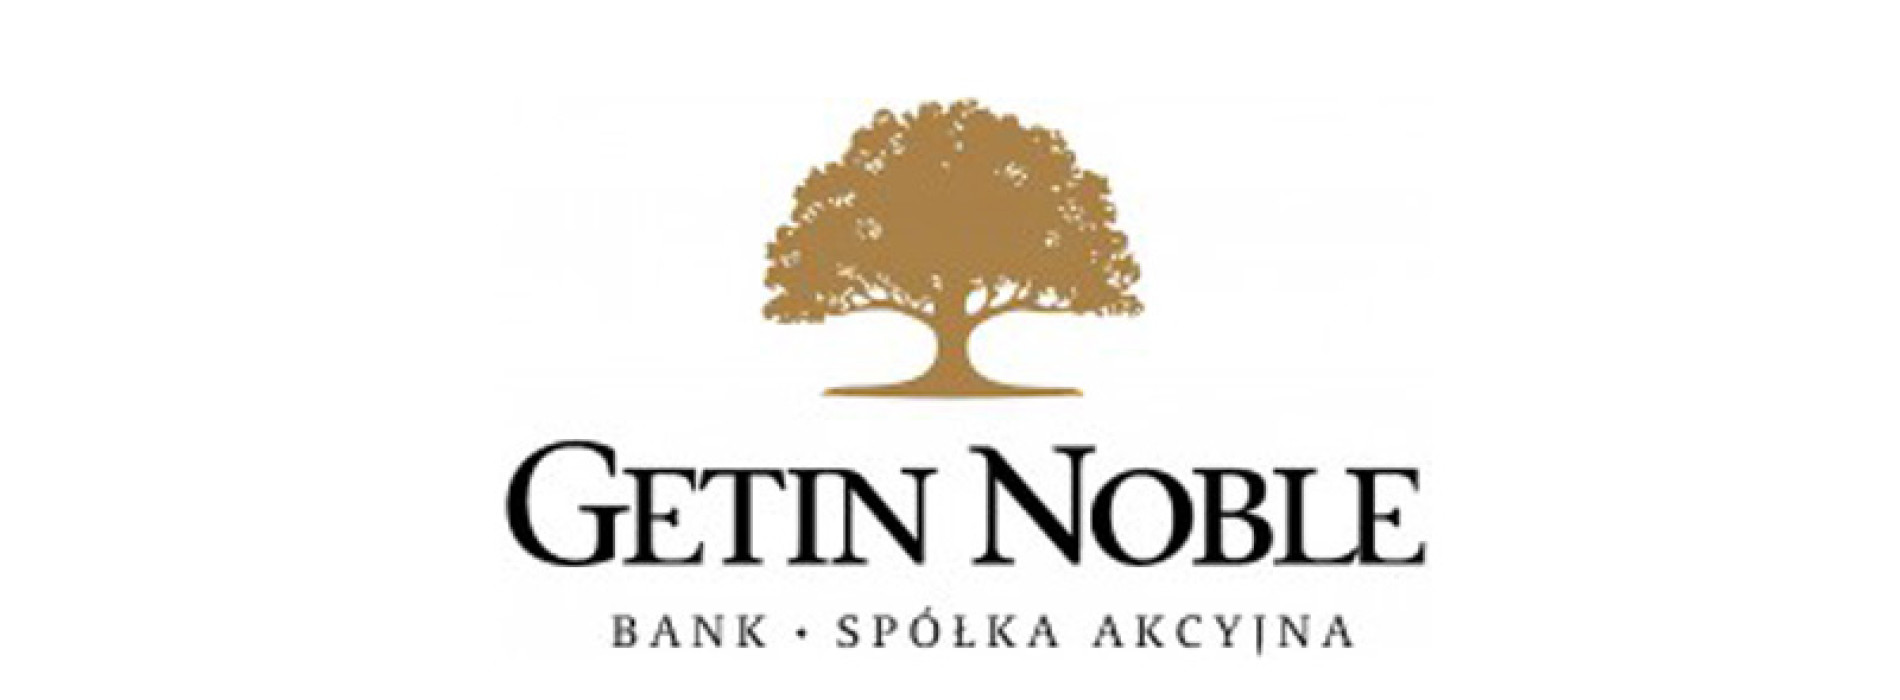 Getin Noble Bank nowym Członkiem Nadzwyczajnym IAB Polska